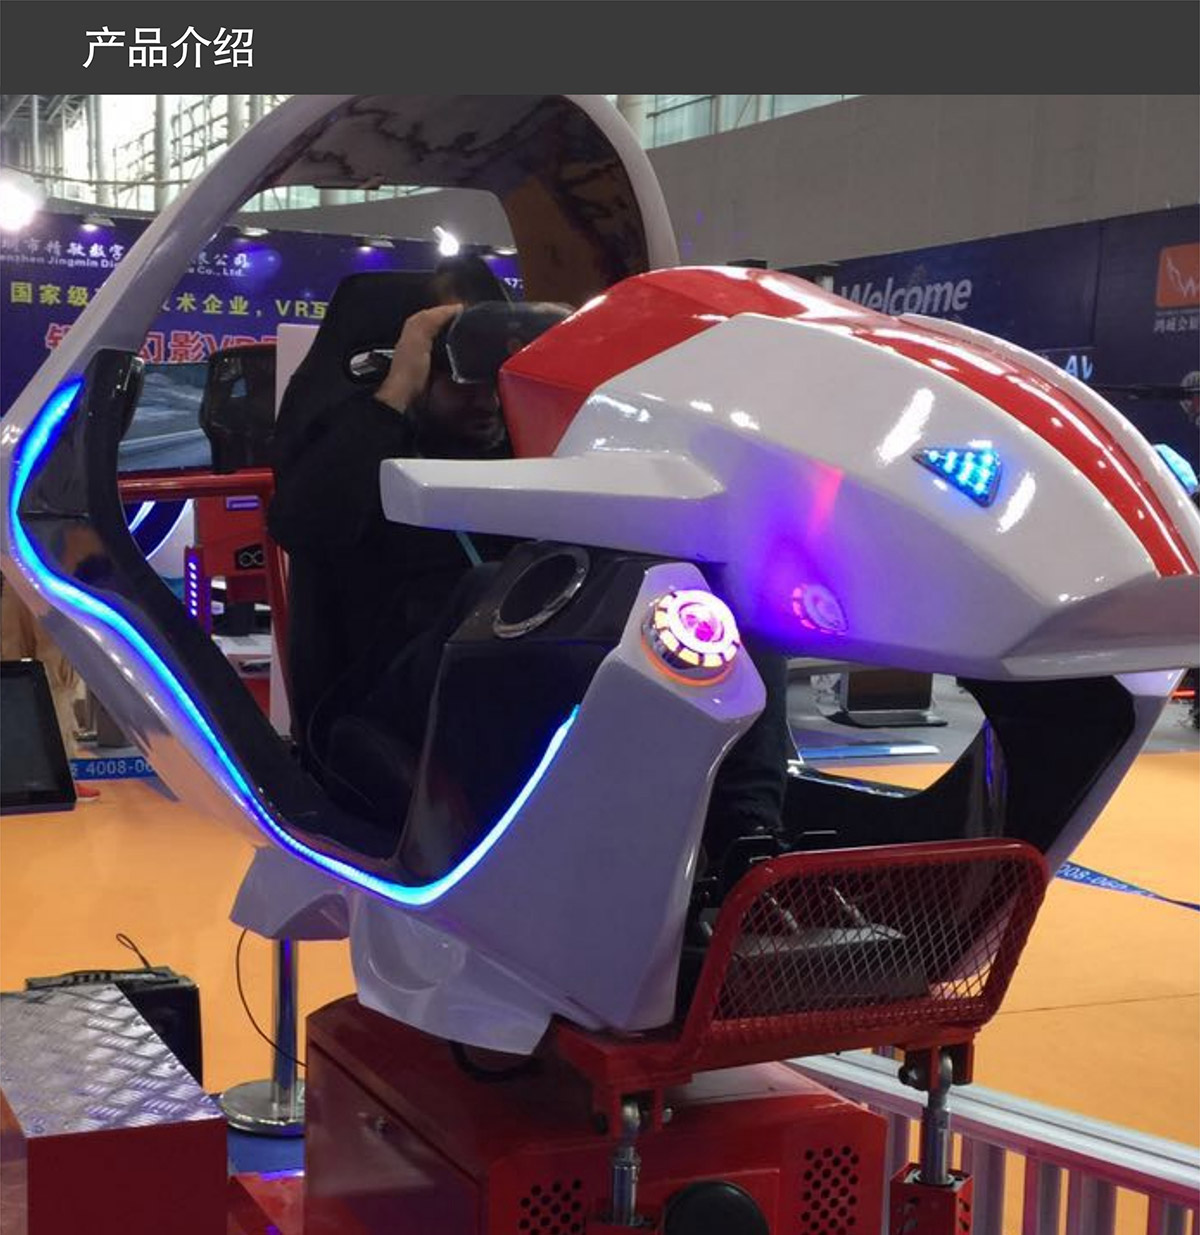 02-VR飞行赛车产品介绍.jpg